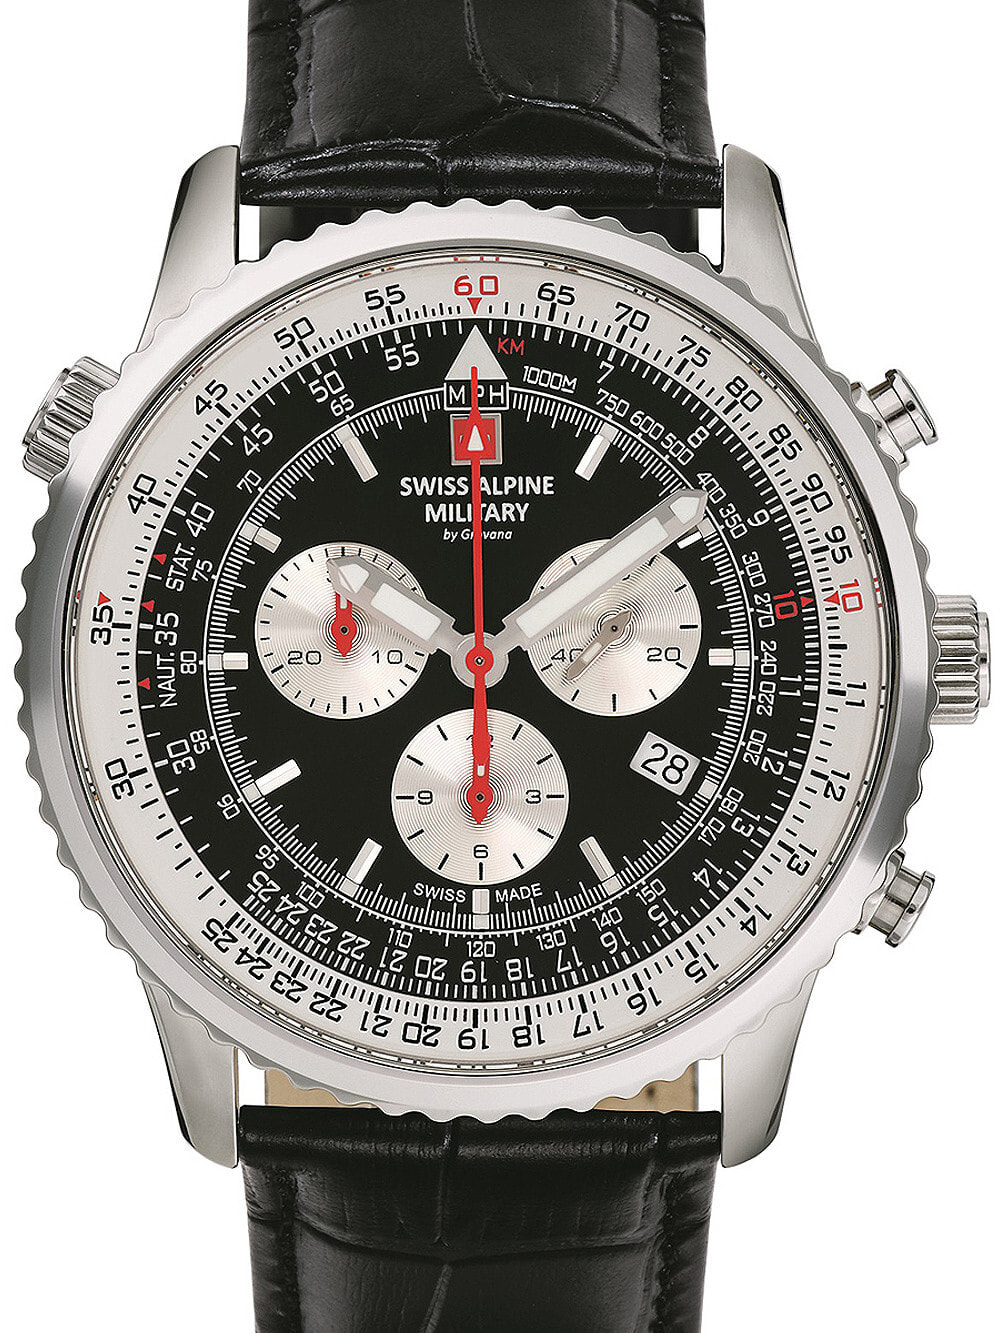 Мужские наручные часы с черным кожаным ремешком Swiss Alpine Military 7078.9537 chrono mens 45mm 10ATM